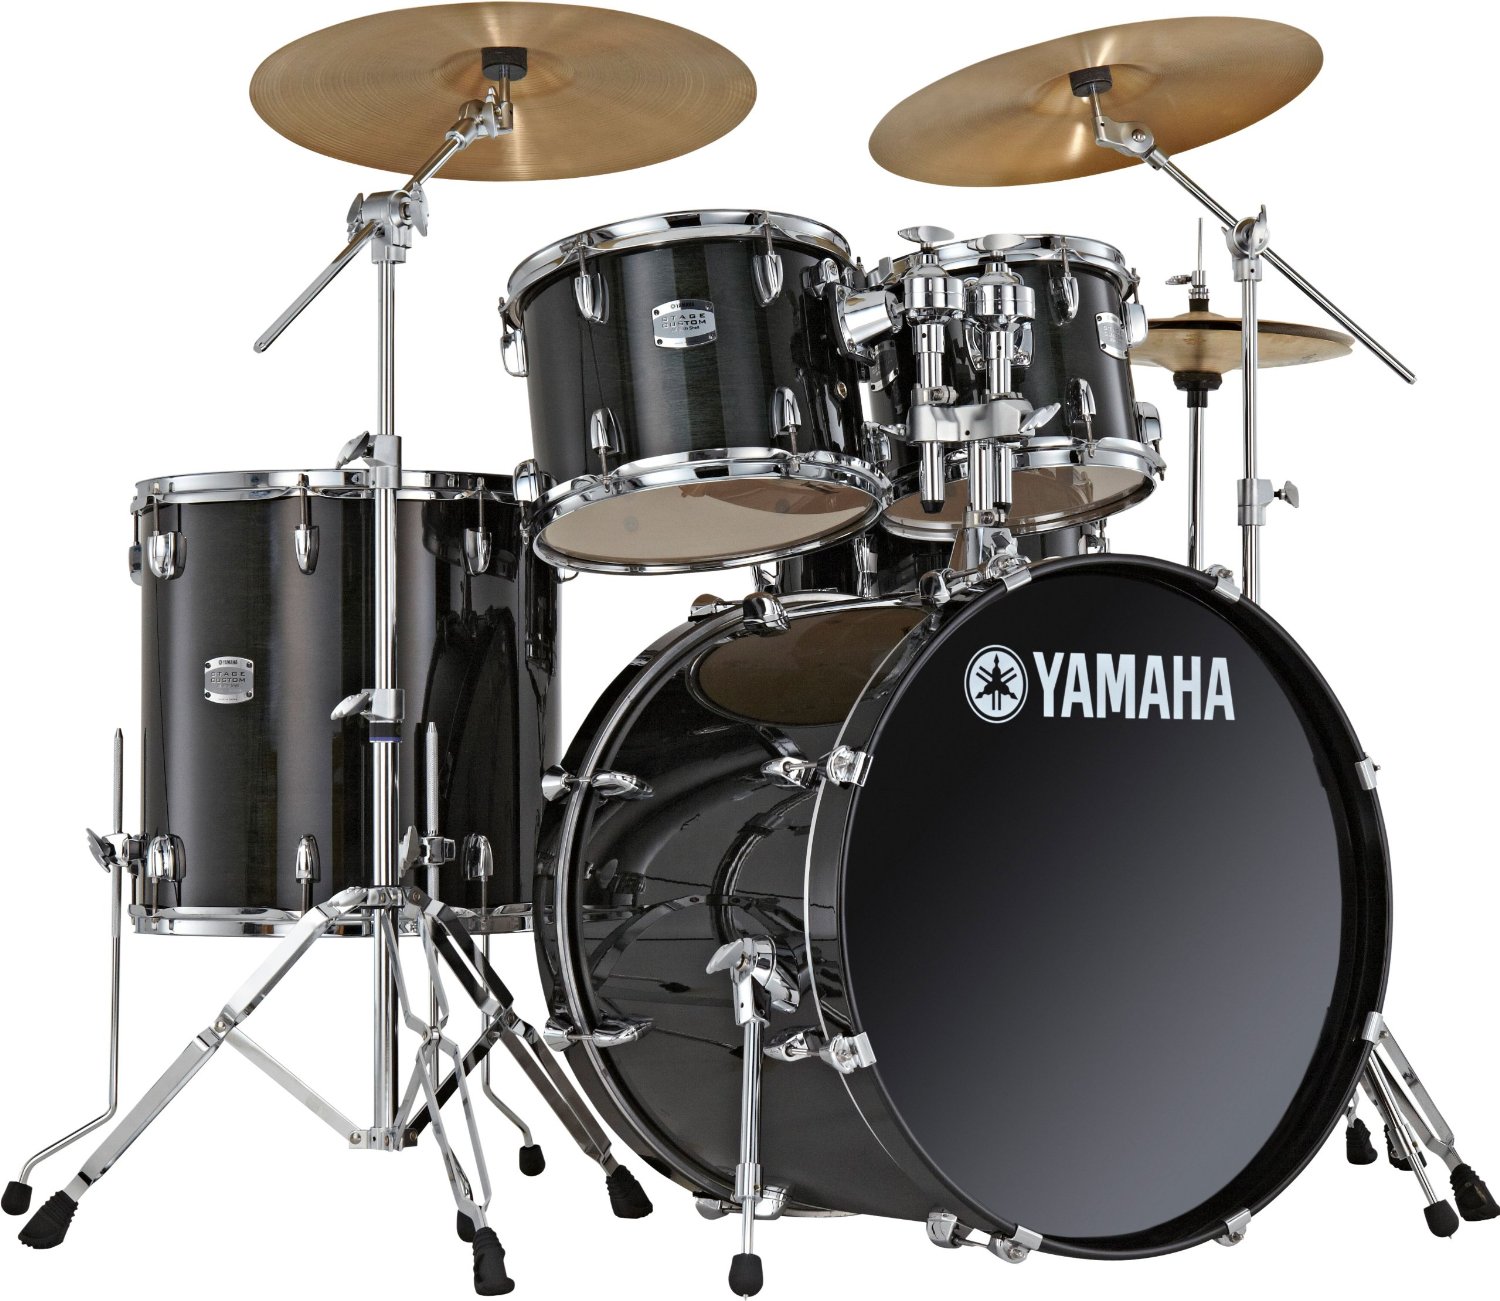 Yamaha Rydeen kits